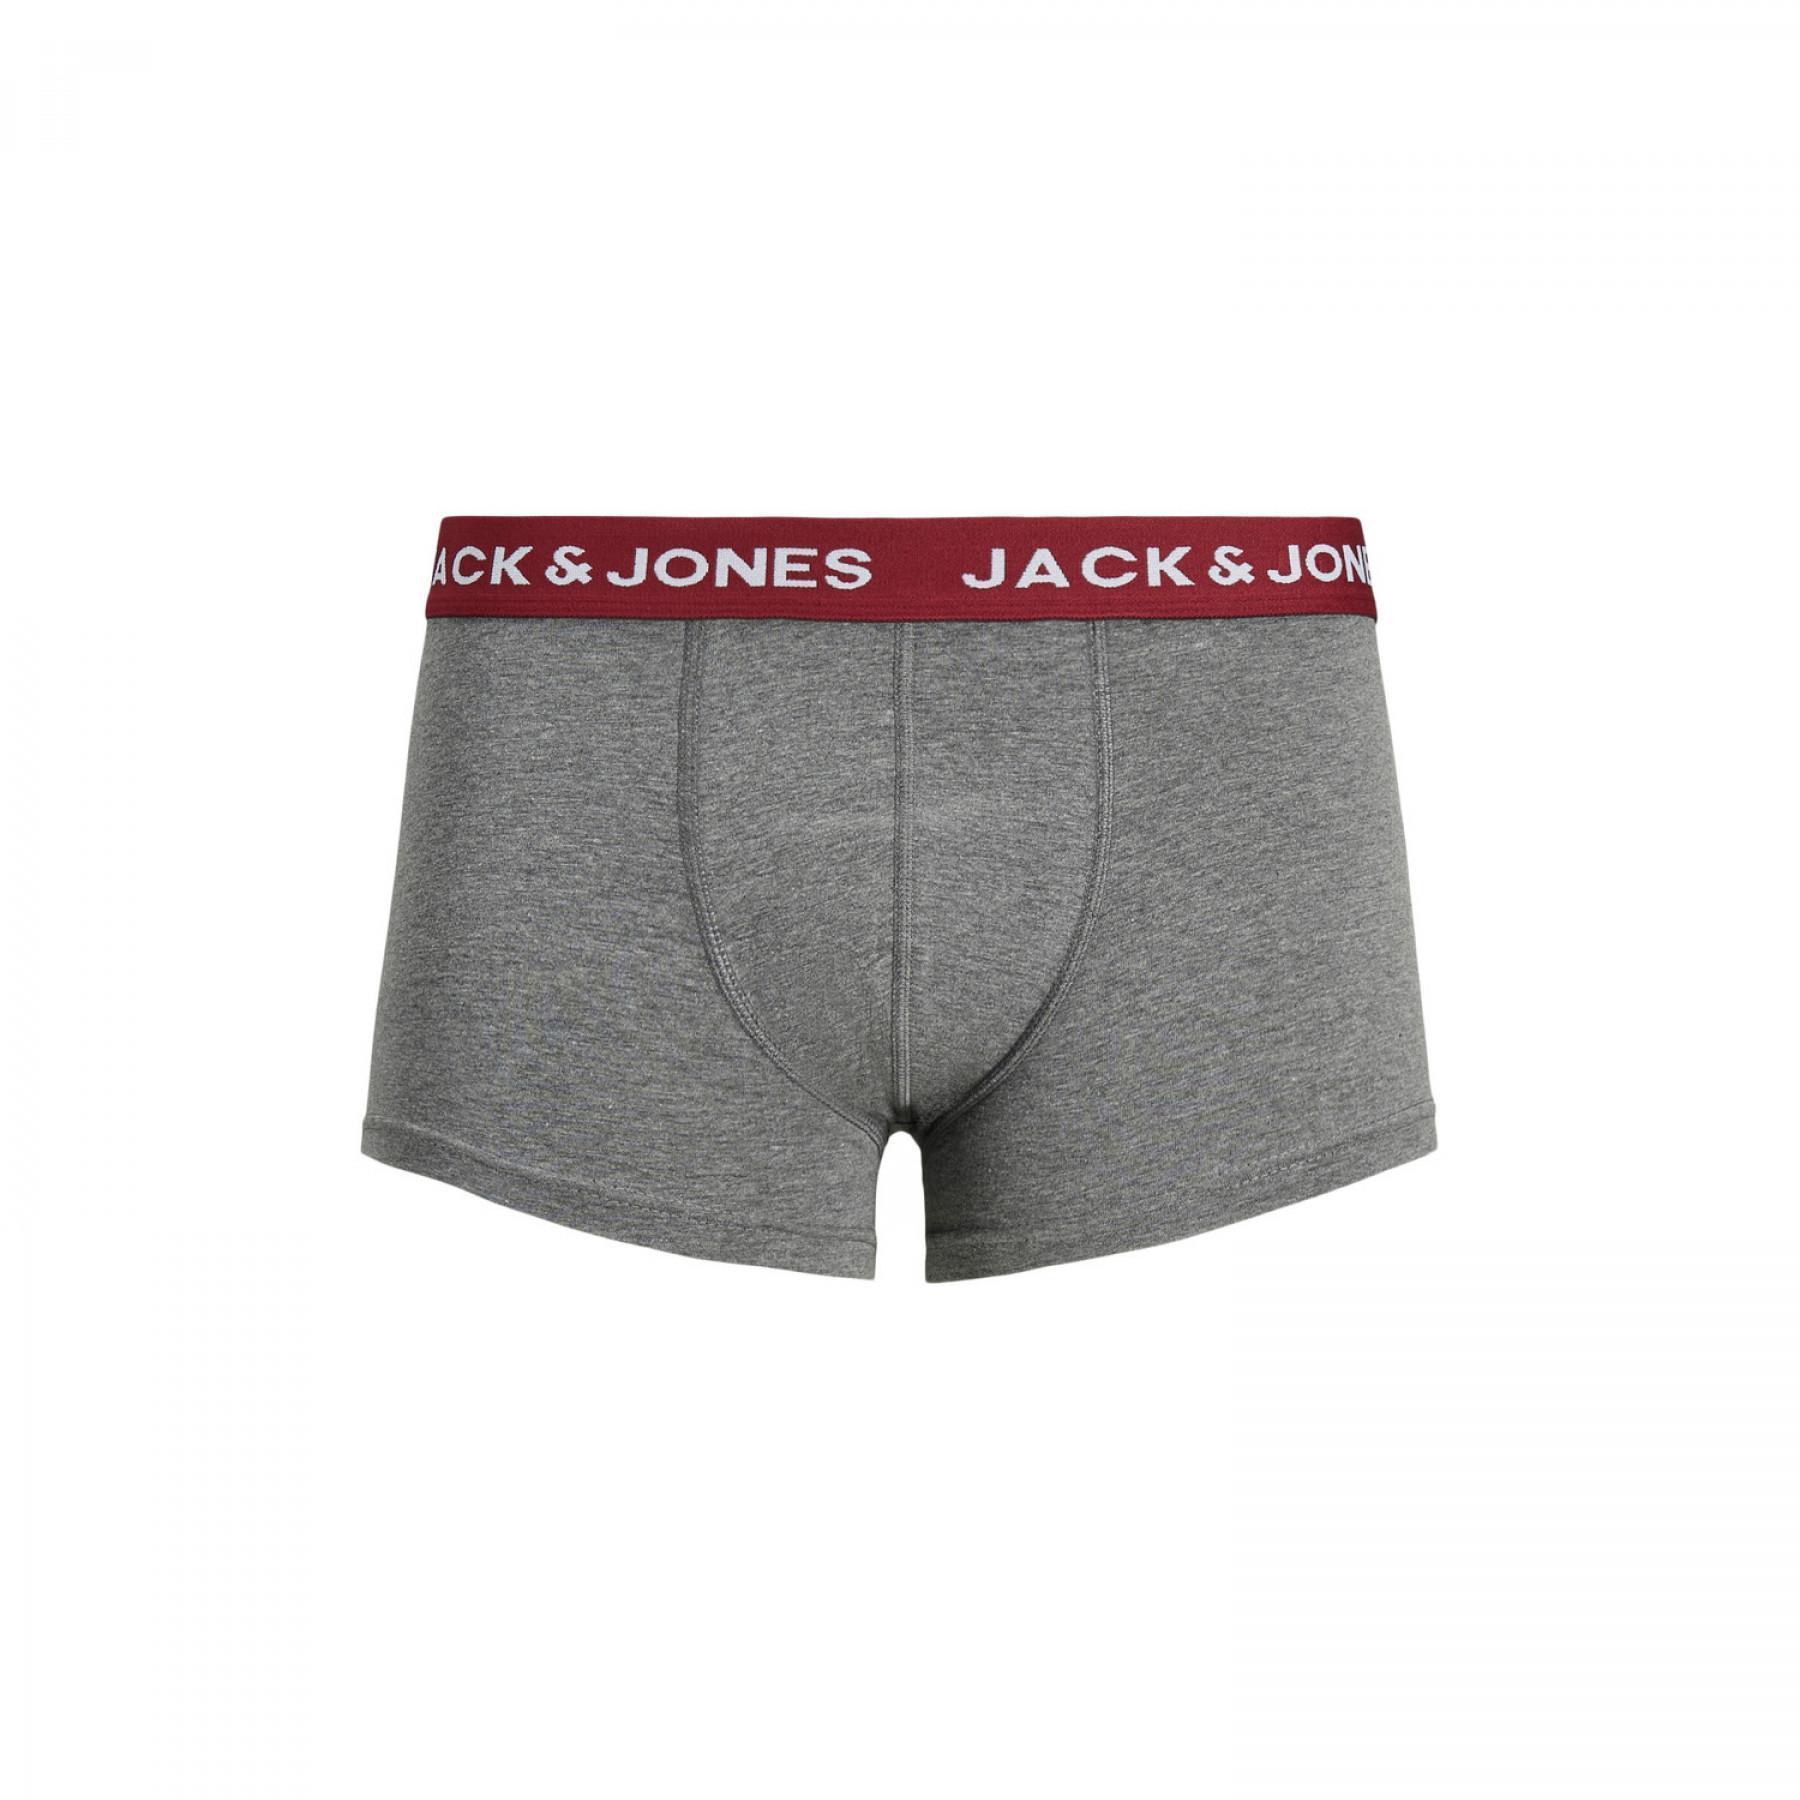 Posten 5 Boxershorts Jack & Jones Summer print